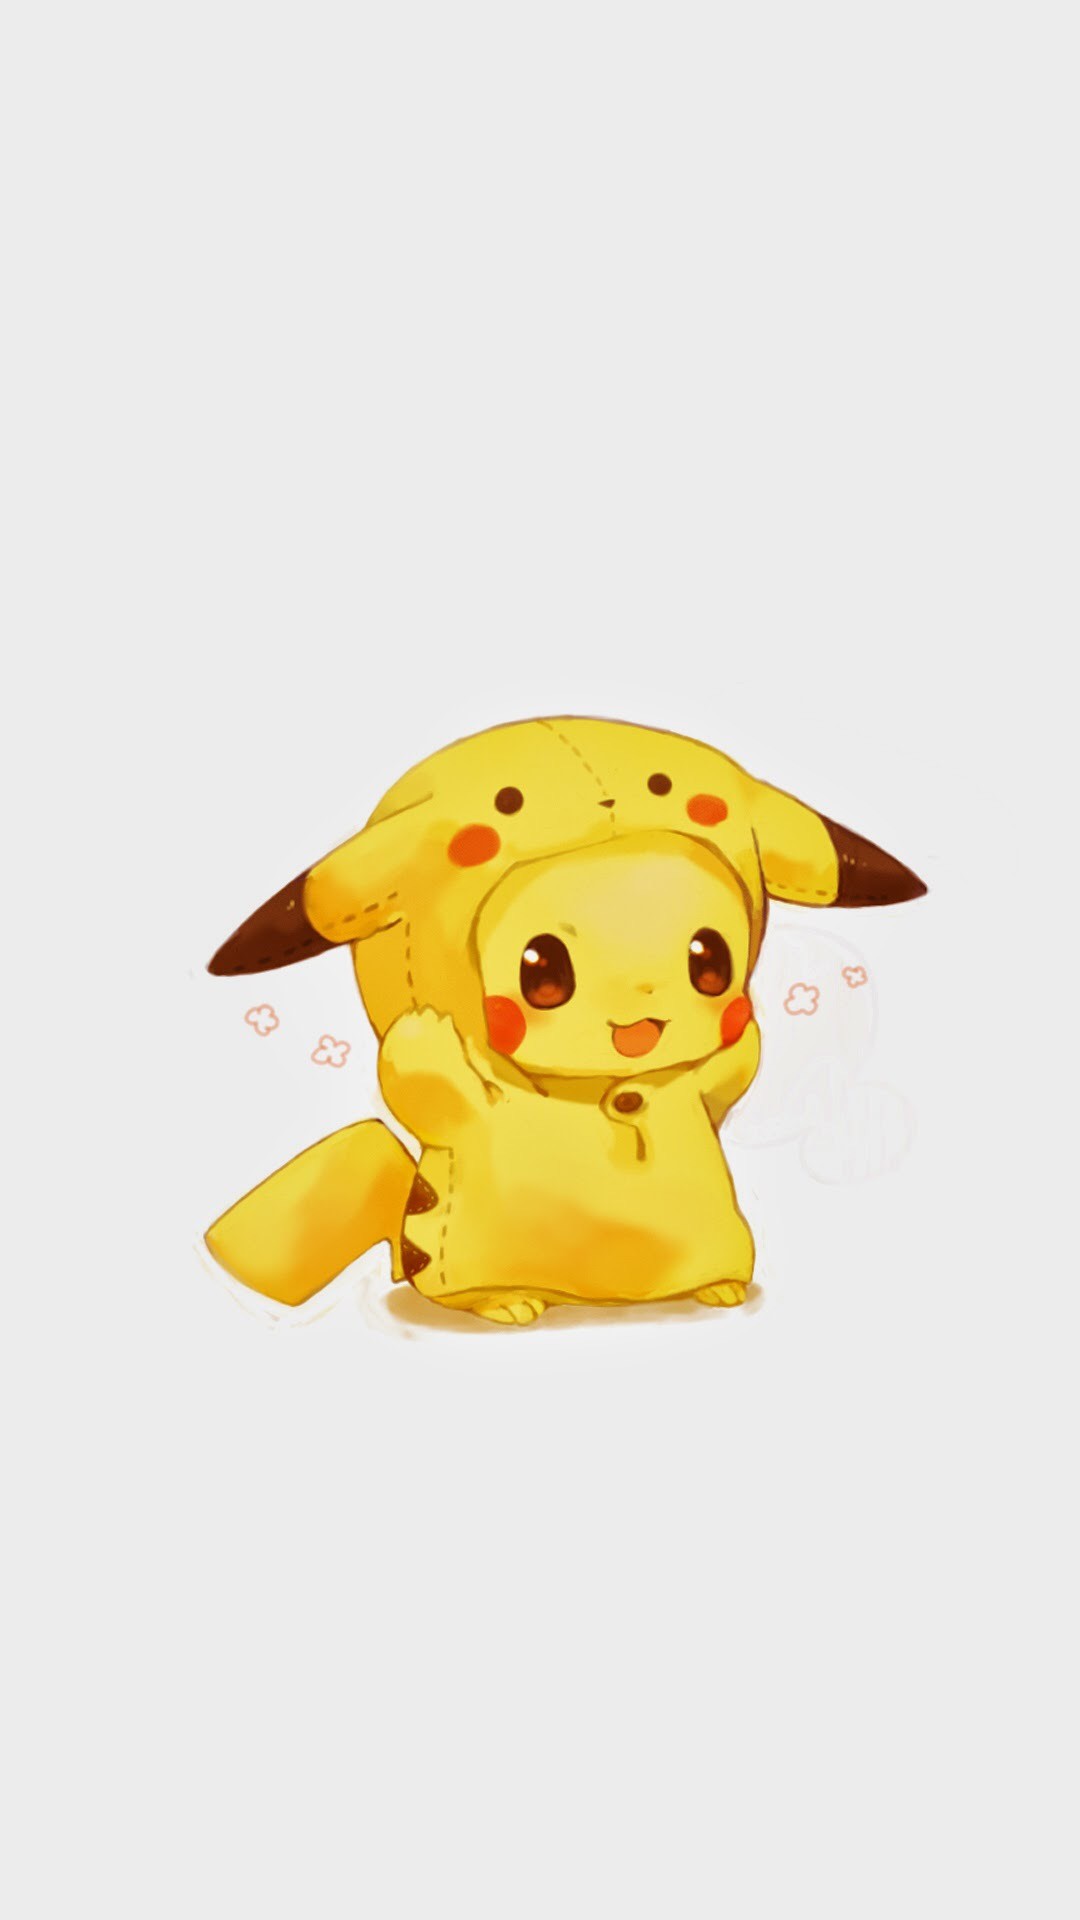 Cute Pikachu: Pikachu được xem là một trong những nhân vật đáng yêu nhất trong loạt trò chơi và anime Pokemon. Hãy xem hình ảnh của chú ấy để được ngắm nhìn vẻ đẹp đáng yêu và dễ thương của Pikachu.